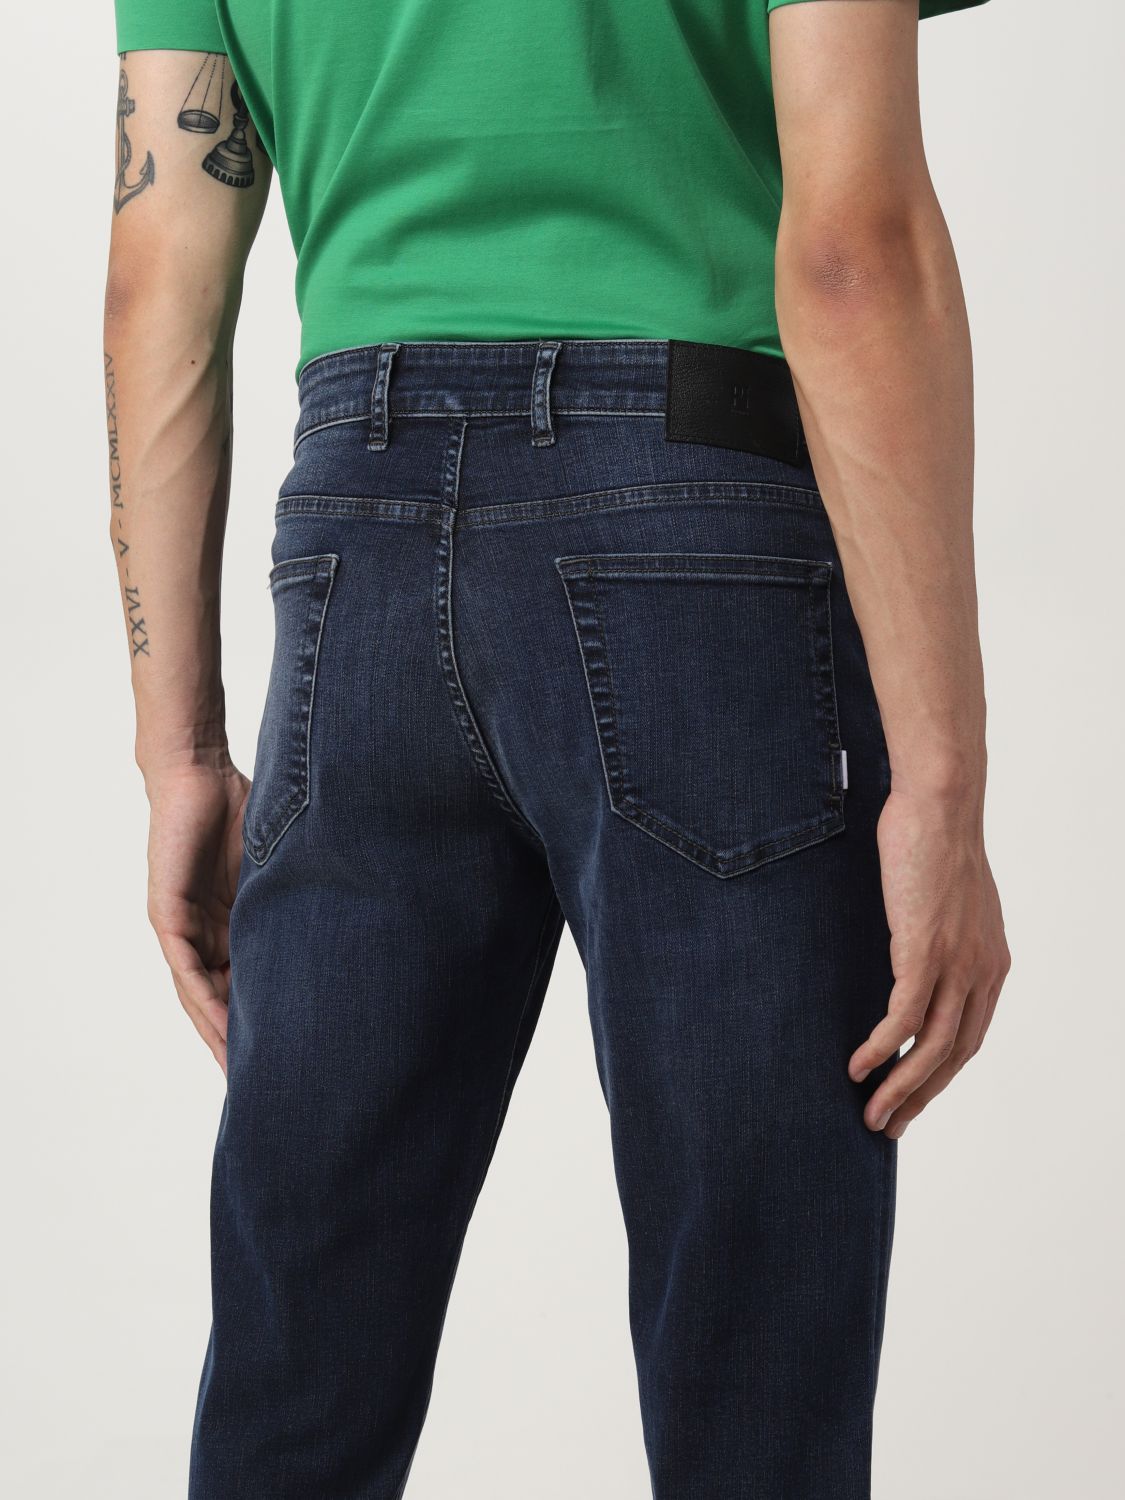 Pantalone skinny in cotone Giglio.com Bambino Abbigliamento Pantaloni e jeans Pantaloni Pantaloni slim & skinny 